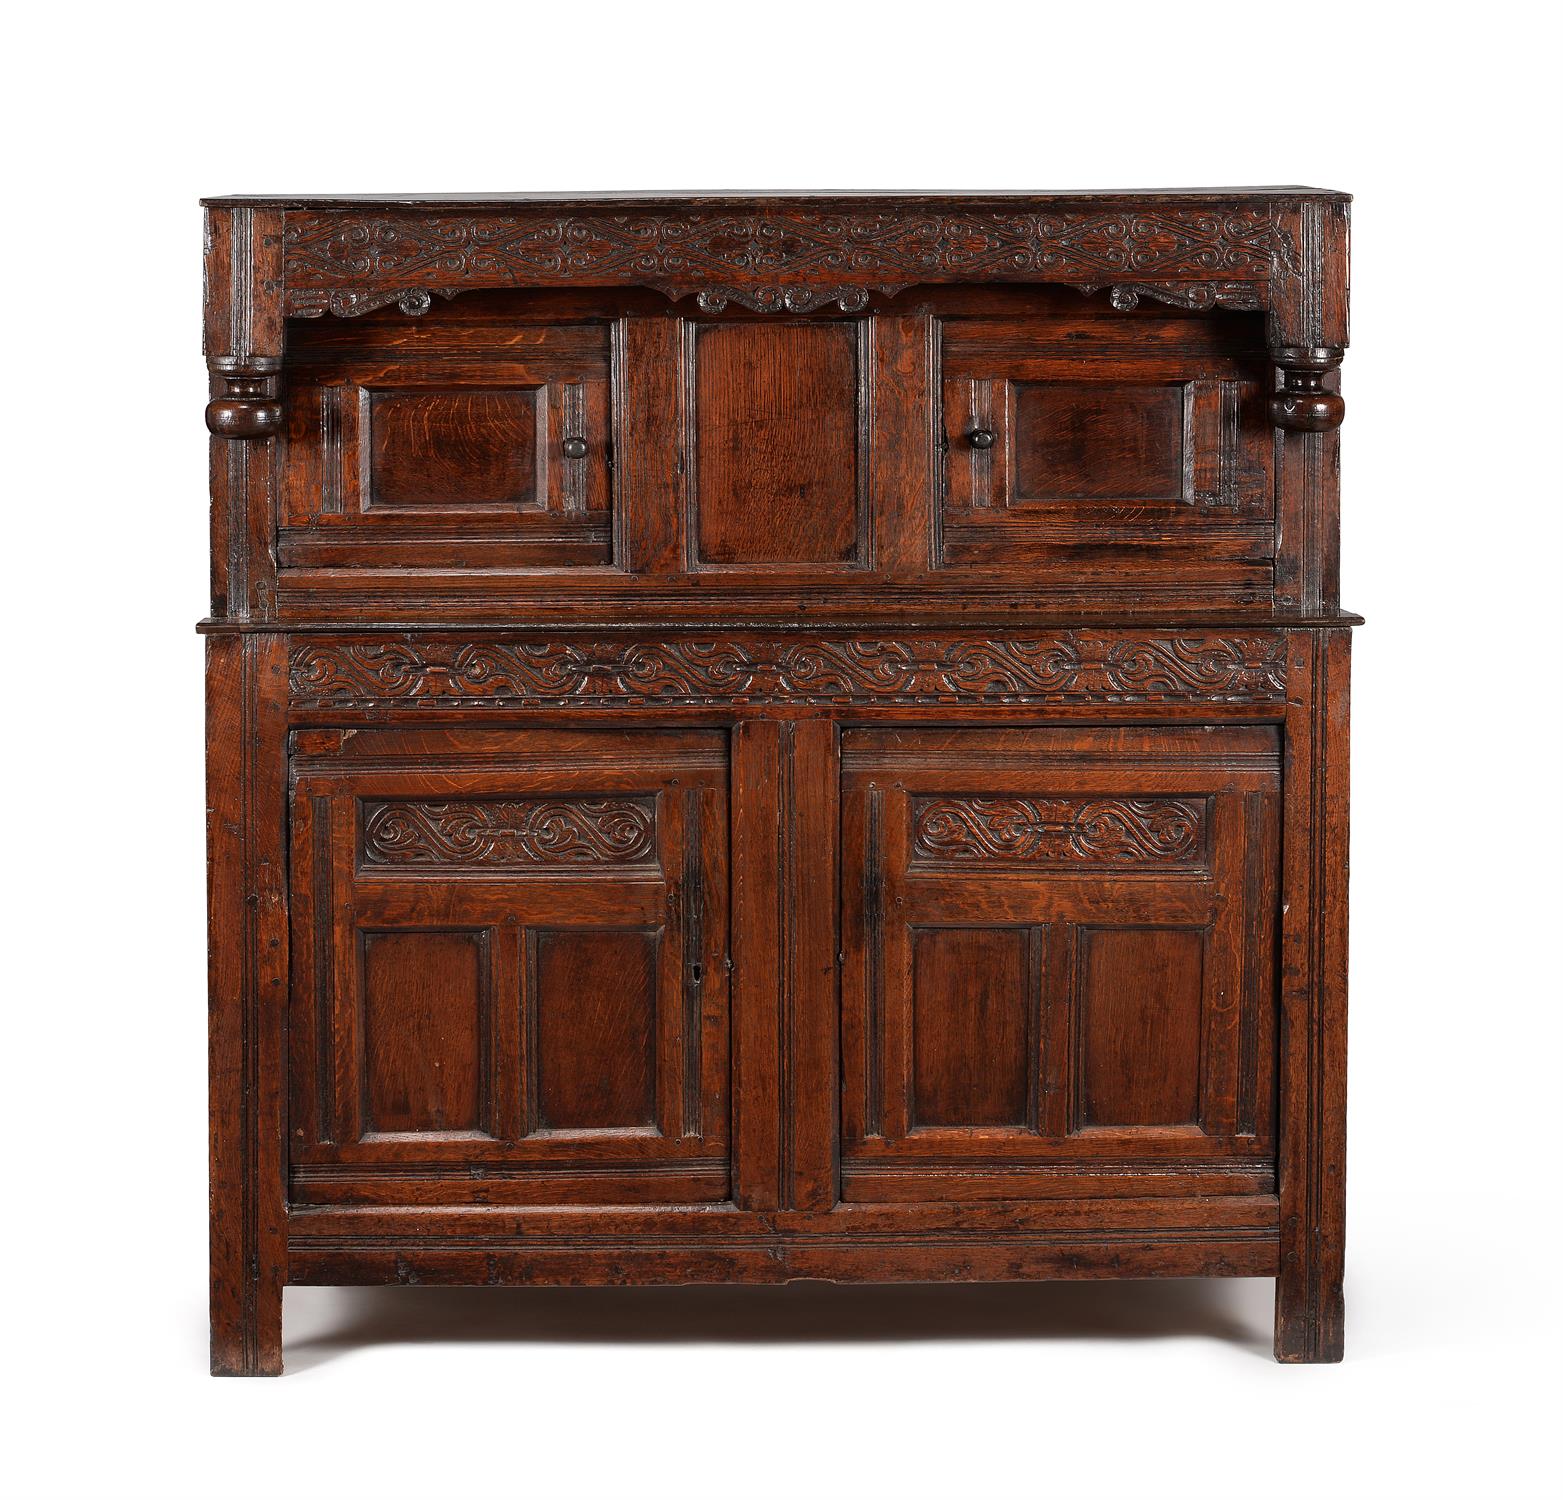 A Charles II oak press or 'court' cupboard, circa 1680